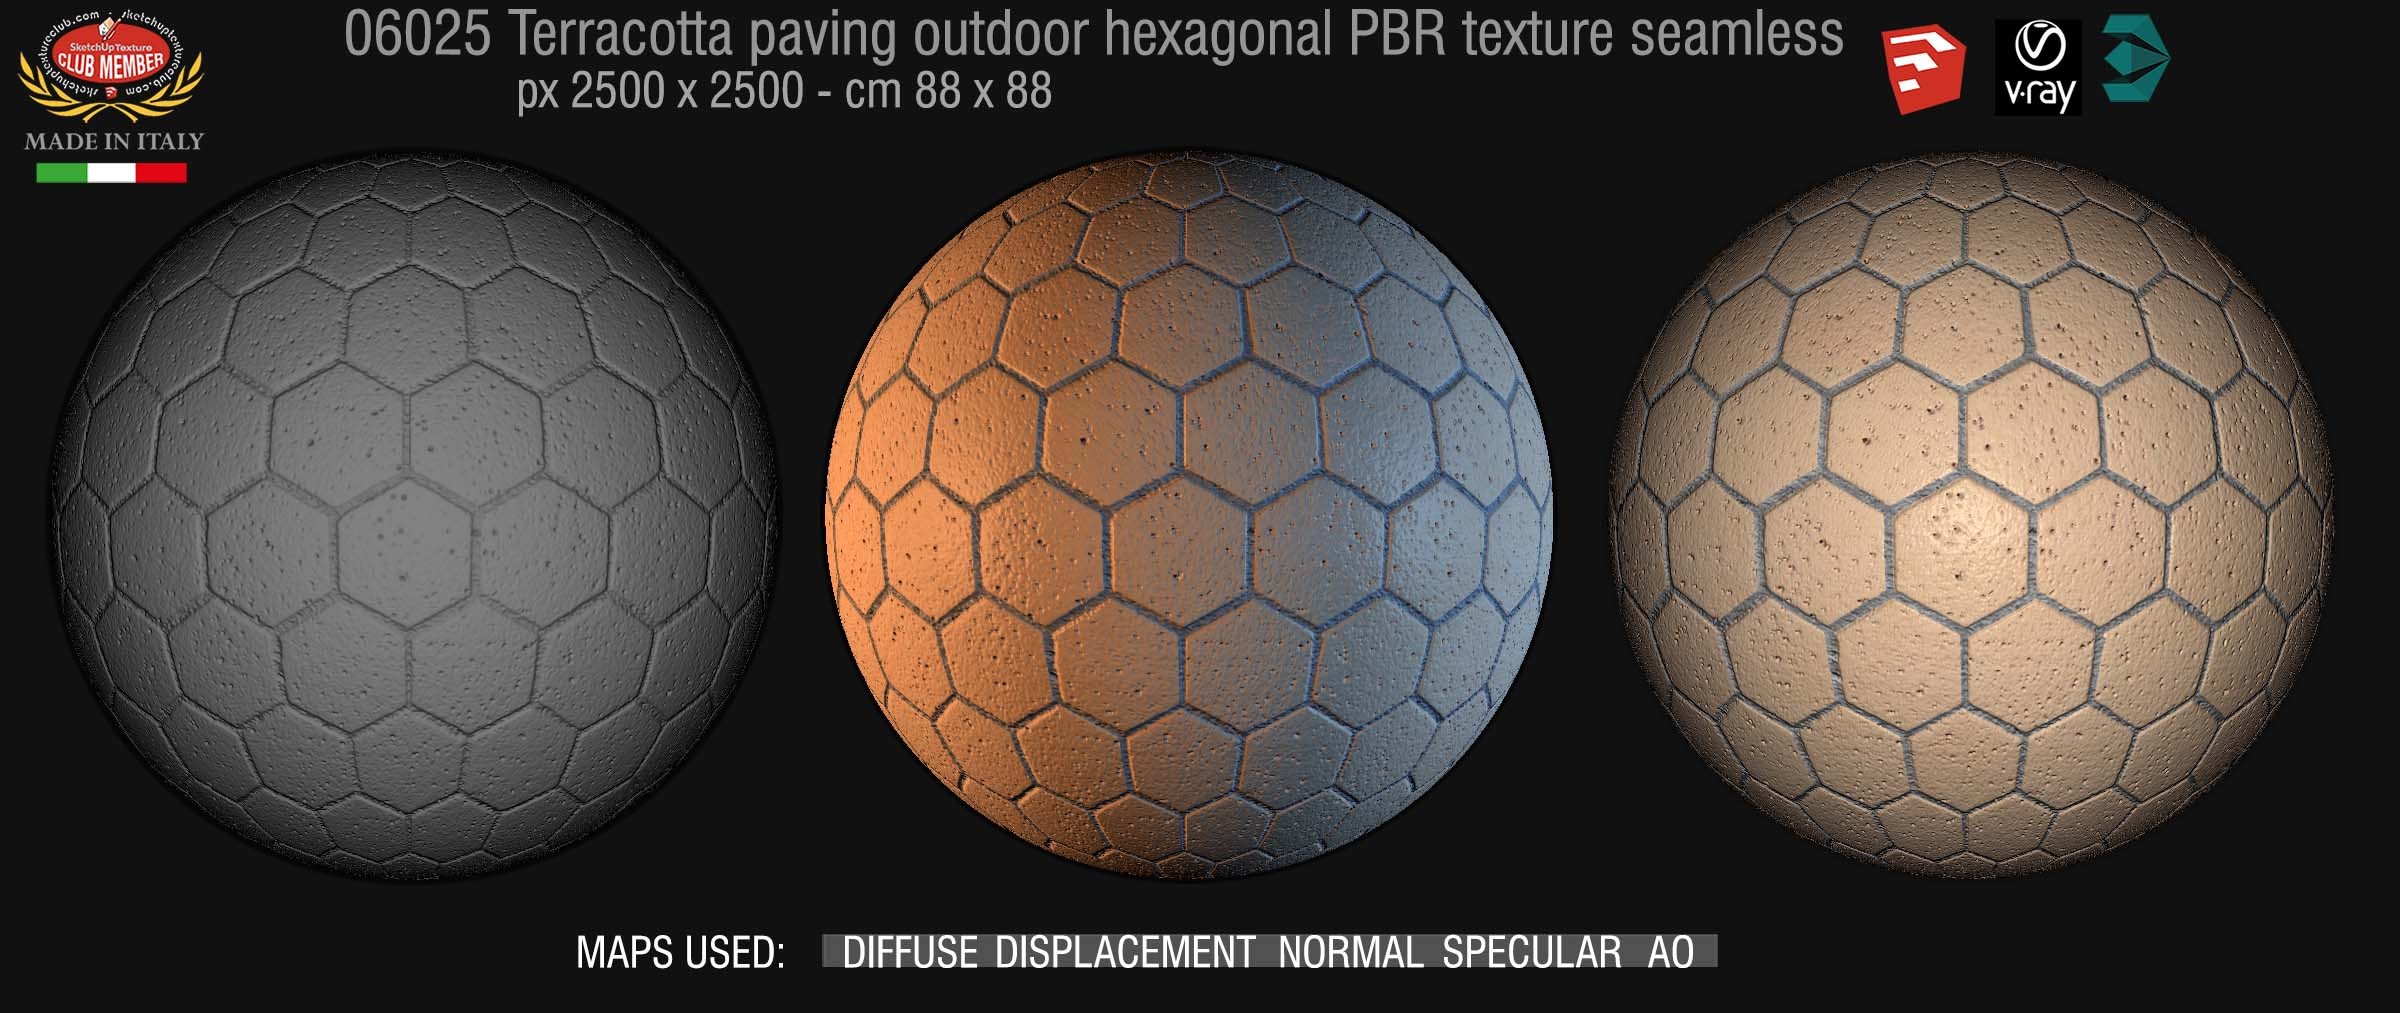 06025 Terracotta paving outdoor hexagonal PBR texture seamless DEMO